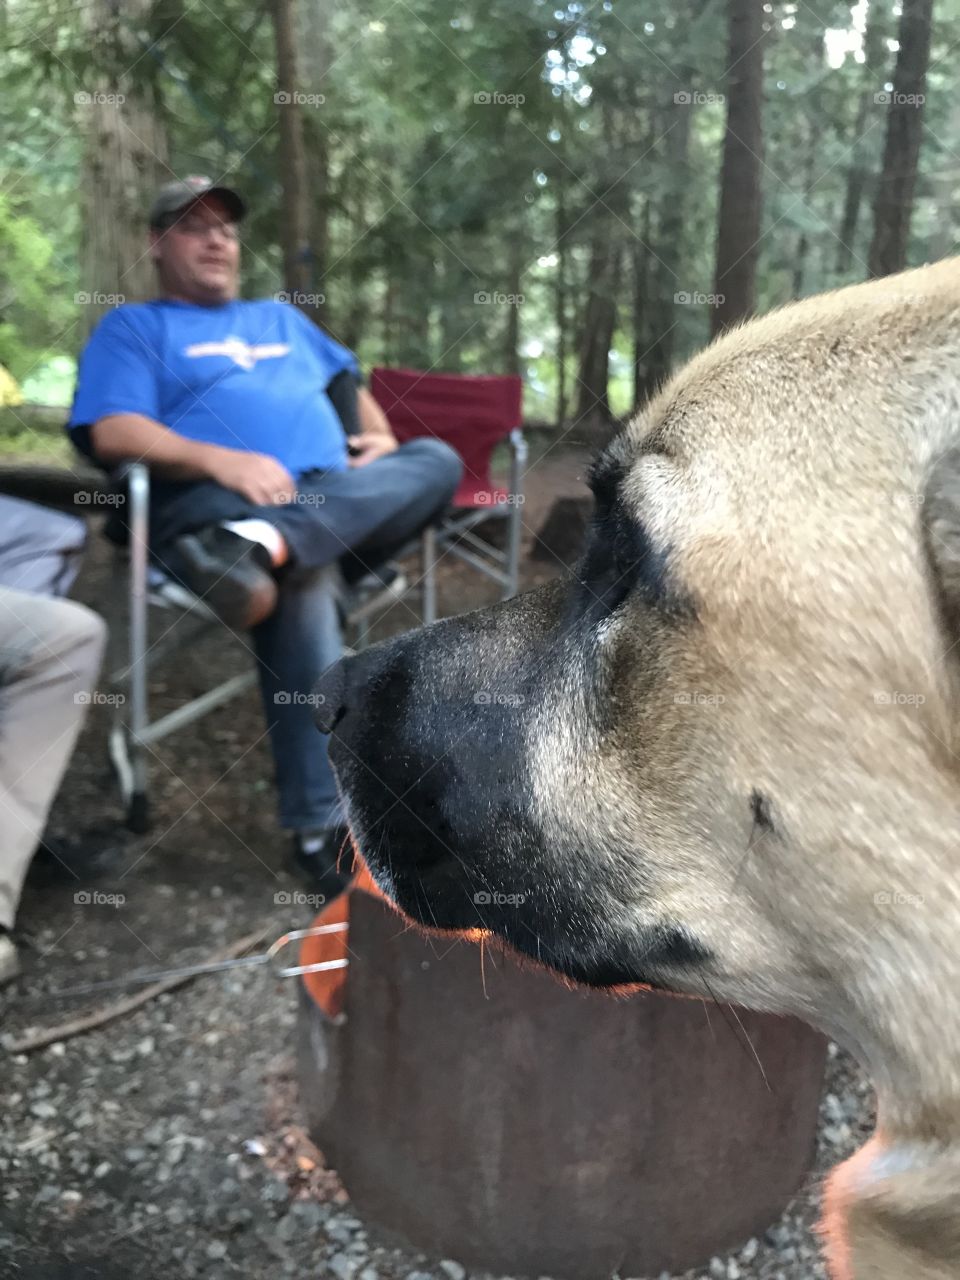 Dog at campfire. Keeping watch. 